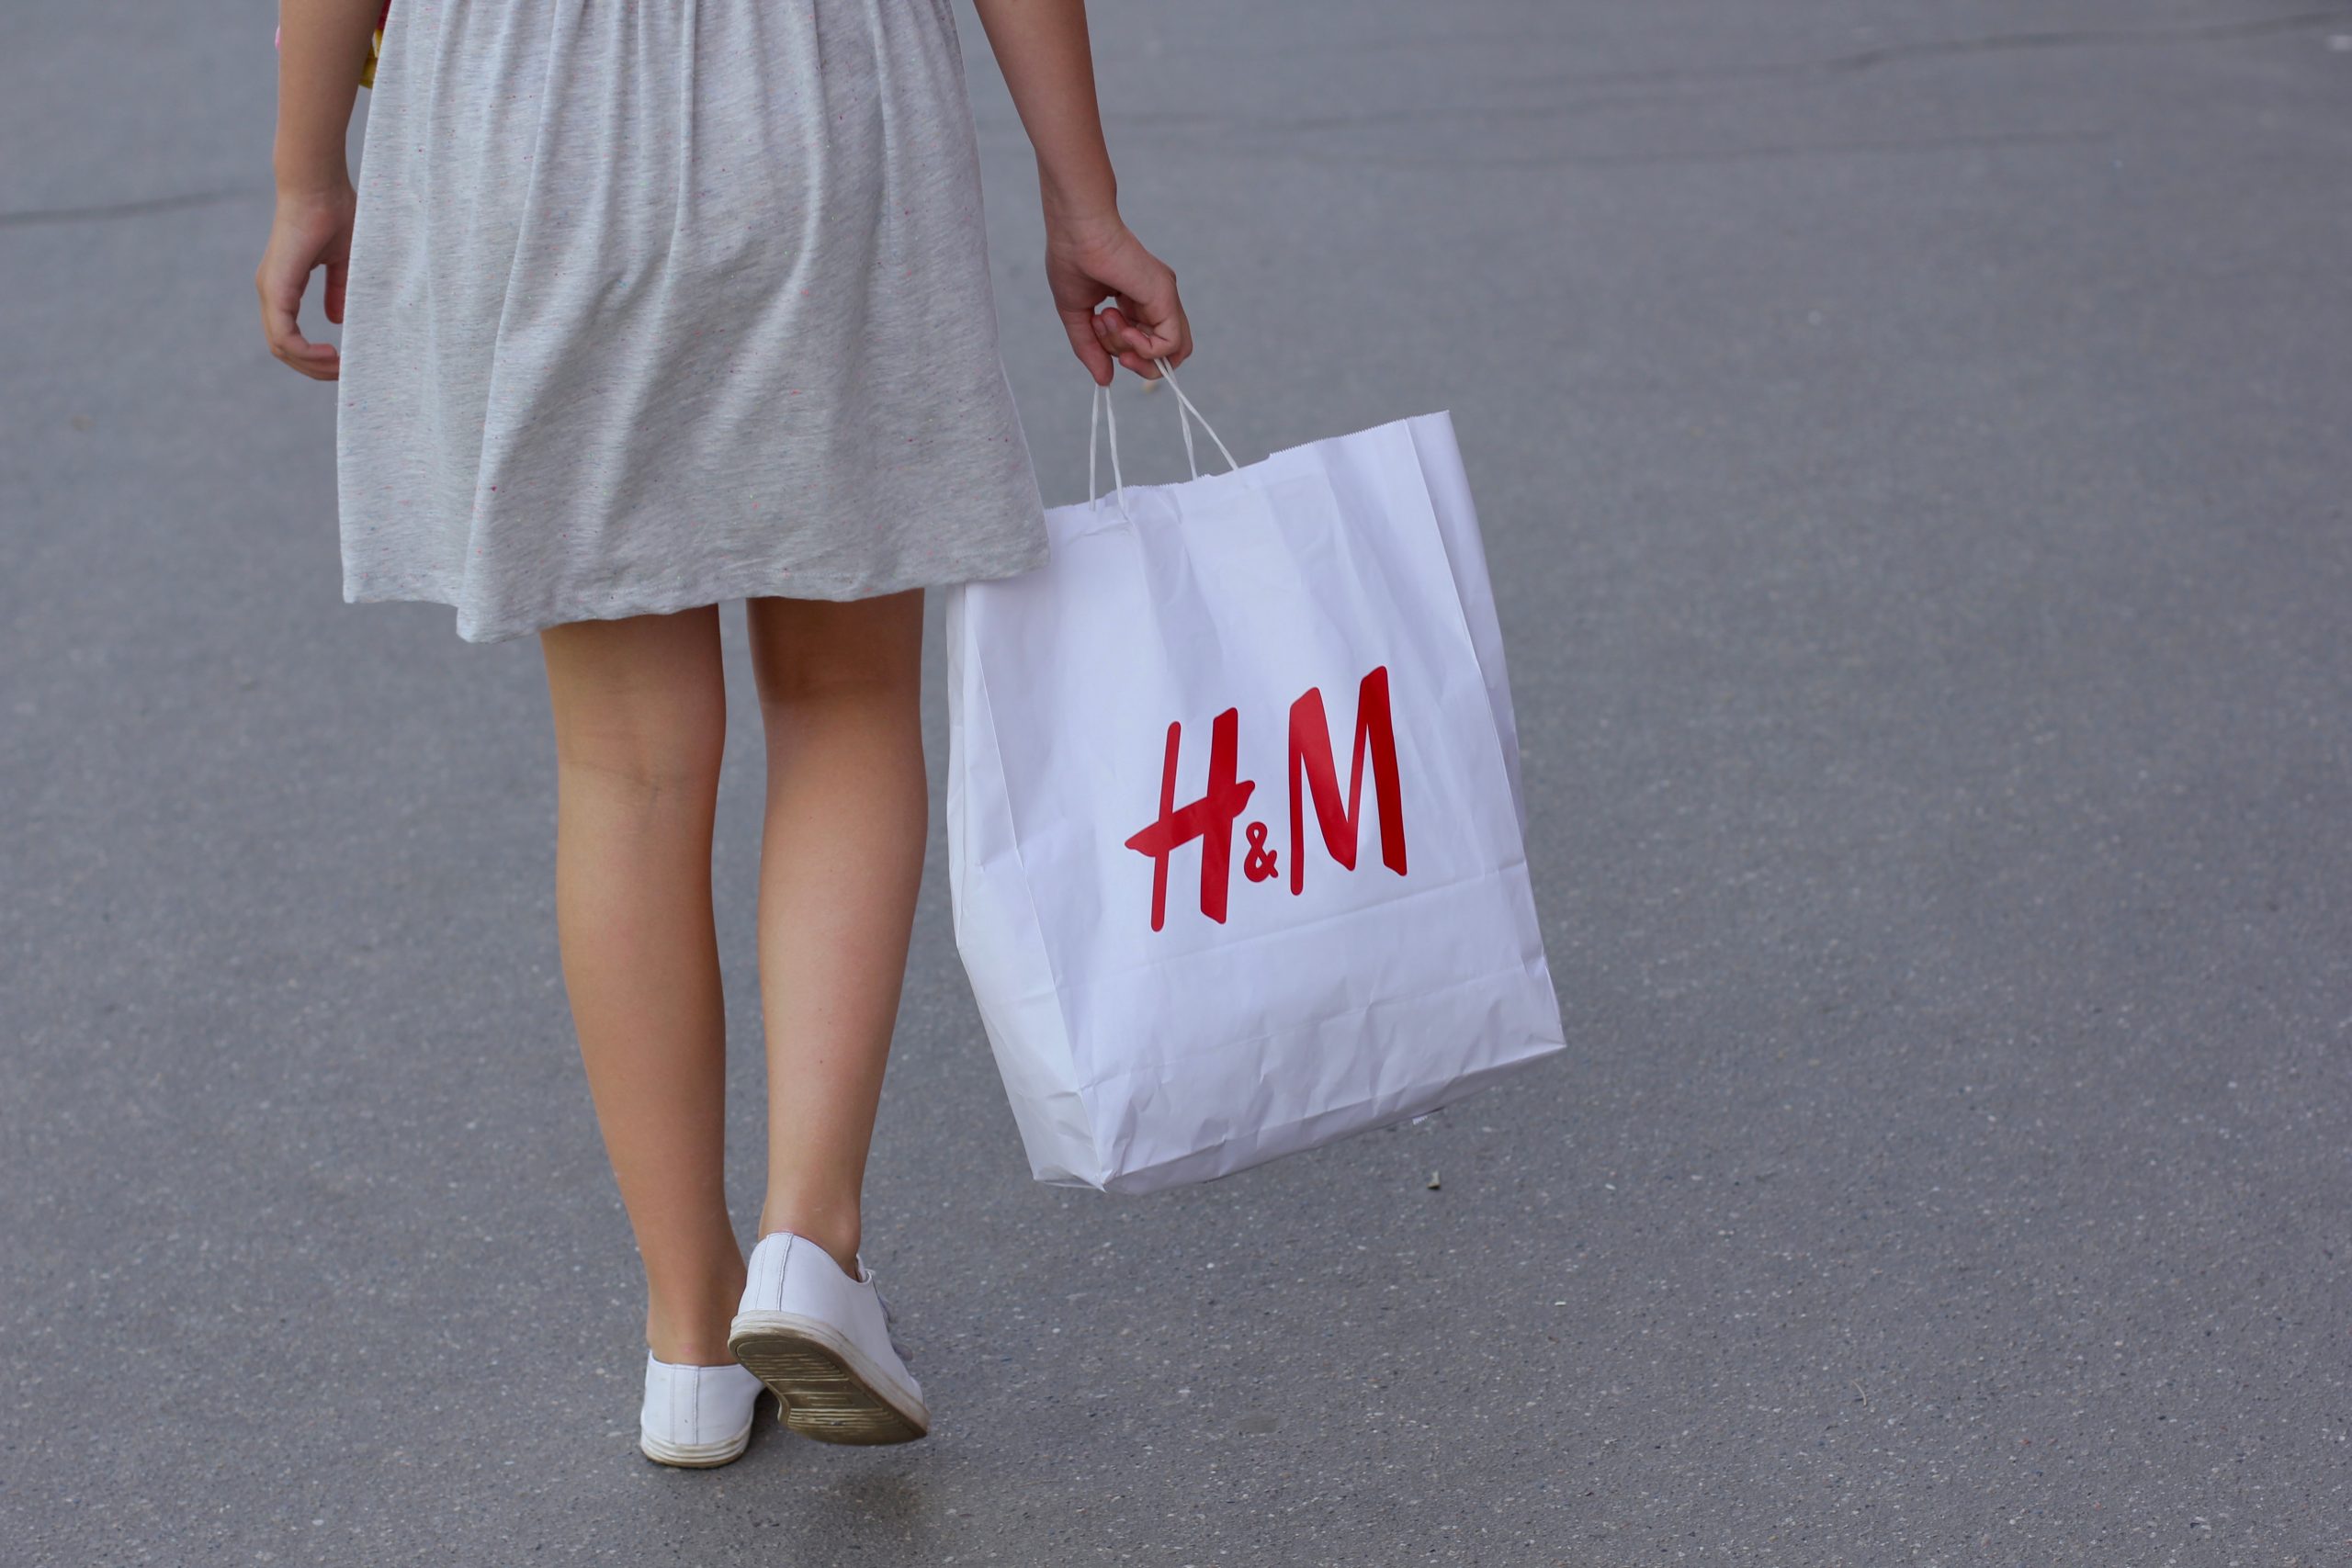 Mutter sein: Für H&M ein Kündigungsgrund